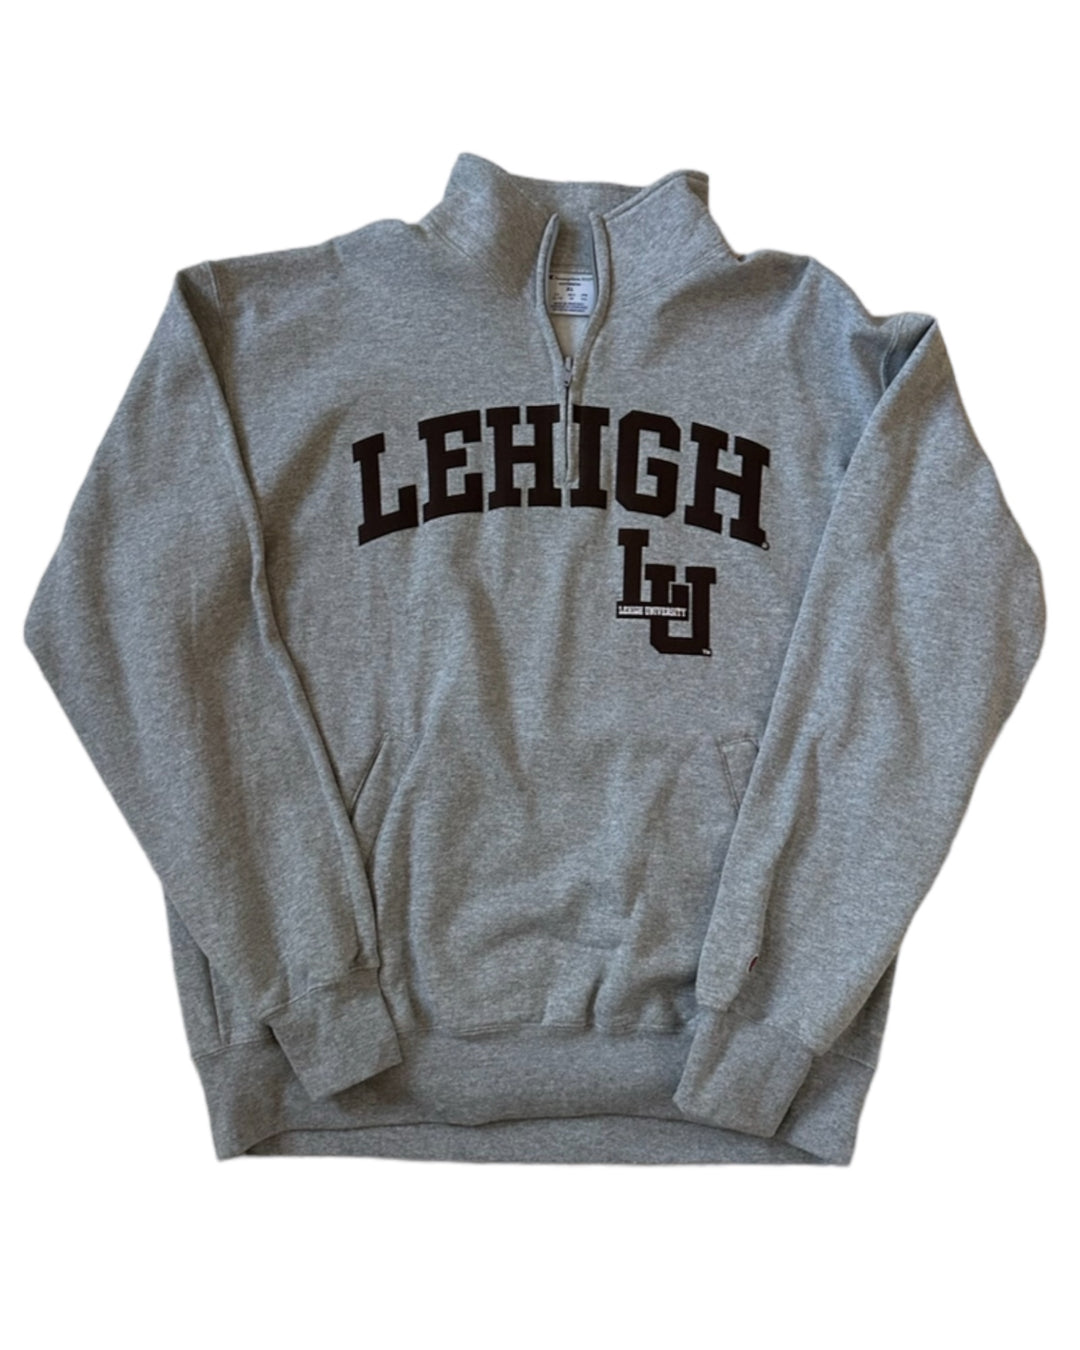 Lehigh Vintage Sweatshirt